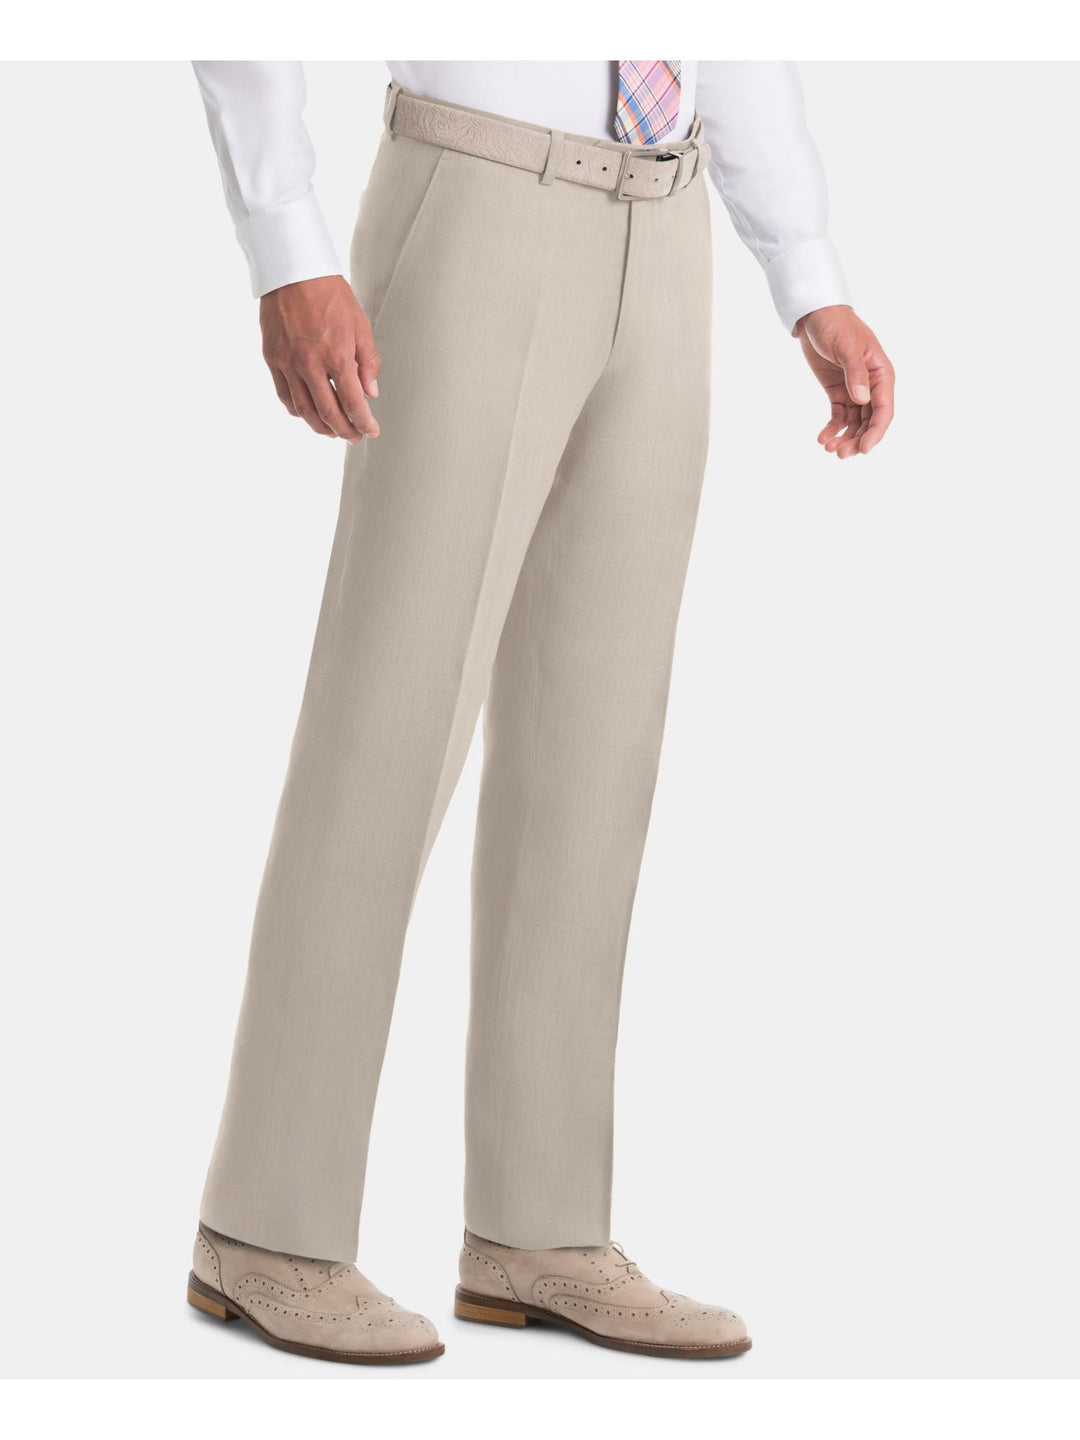 Ralph Lauren Men's Flat Front Classic Fit Pants Beige Size 33X32